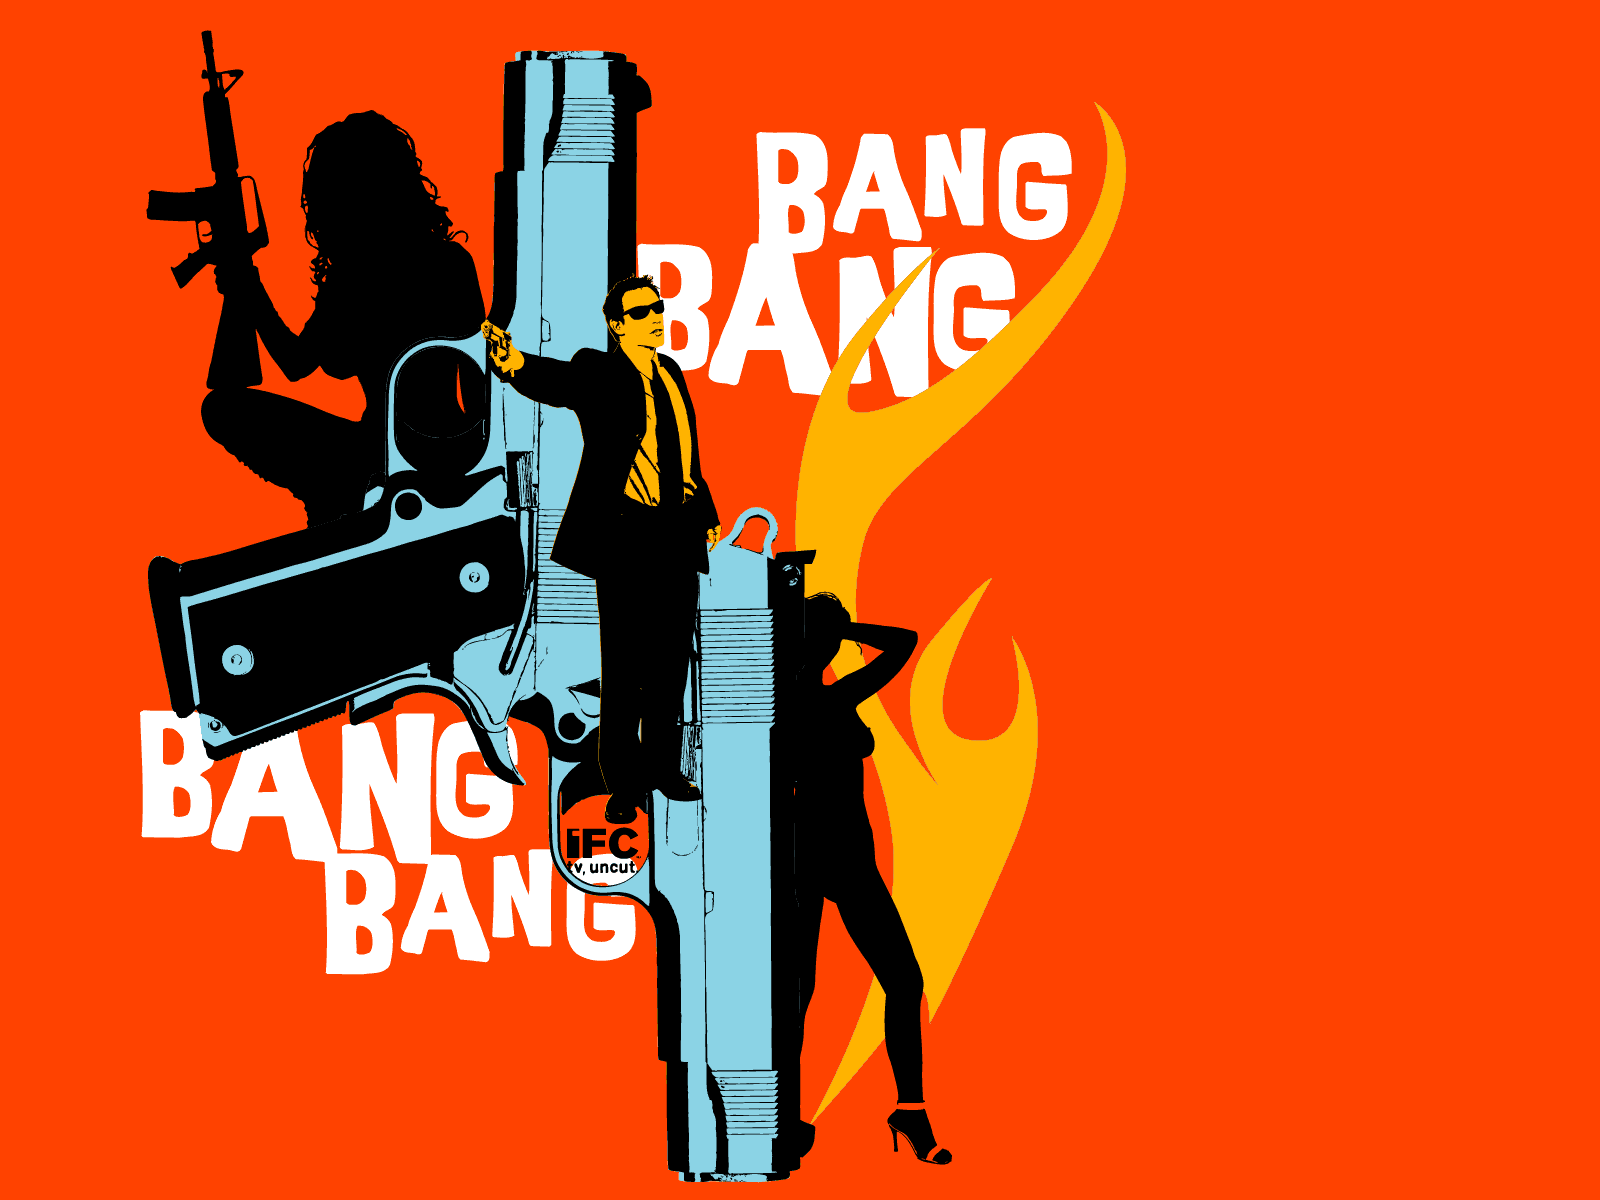 Bling bang bang lyrics. Bang. Ban ban. G-ba. Bang картинка.